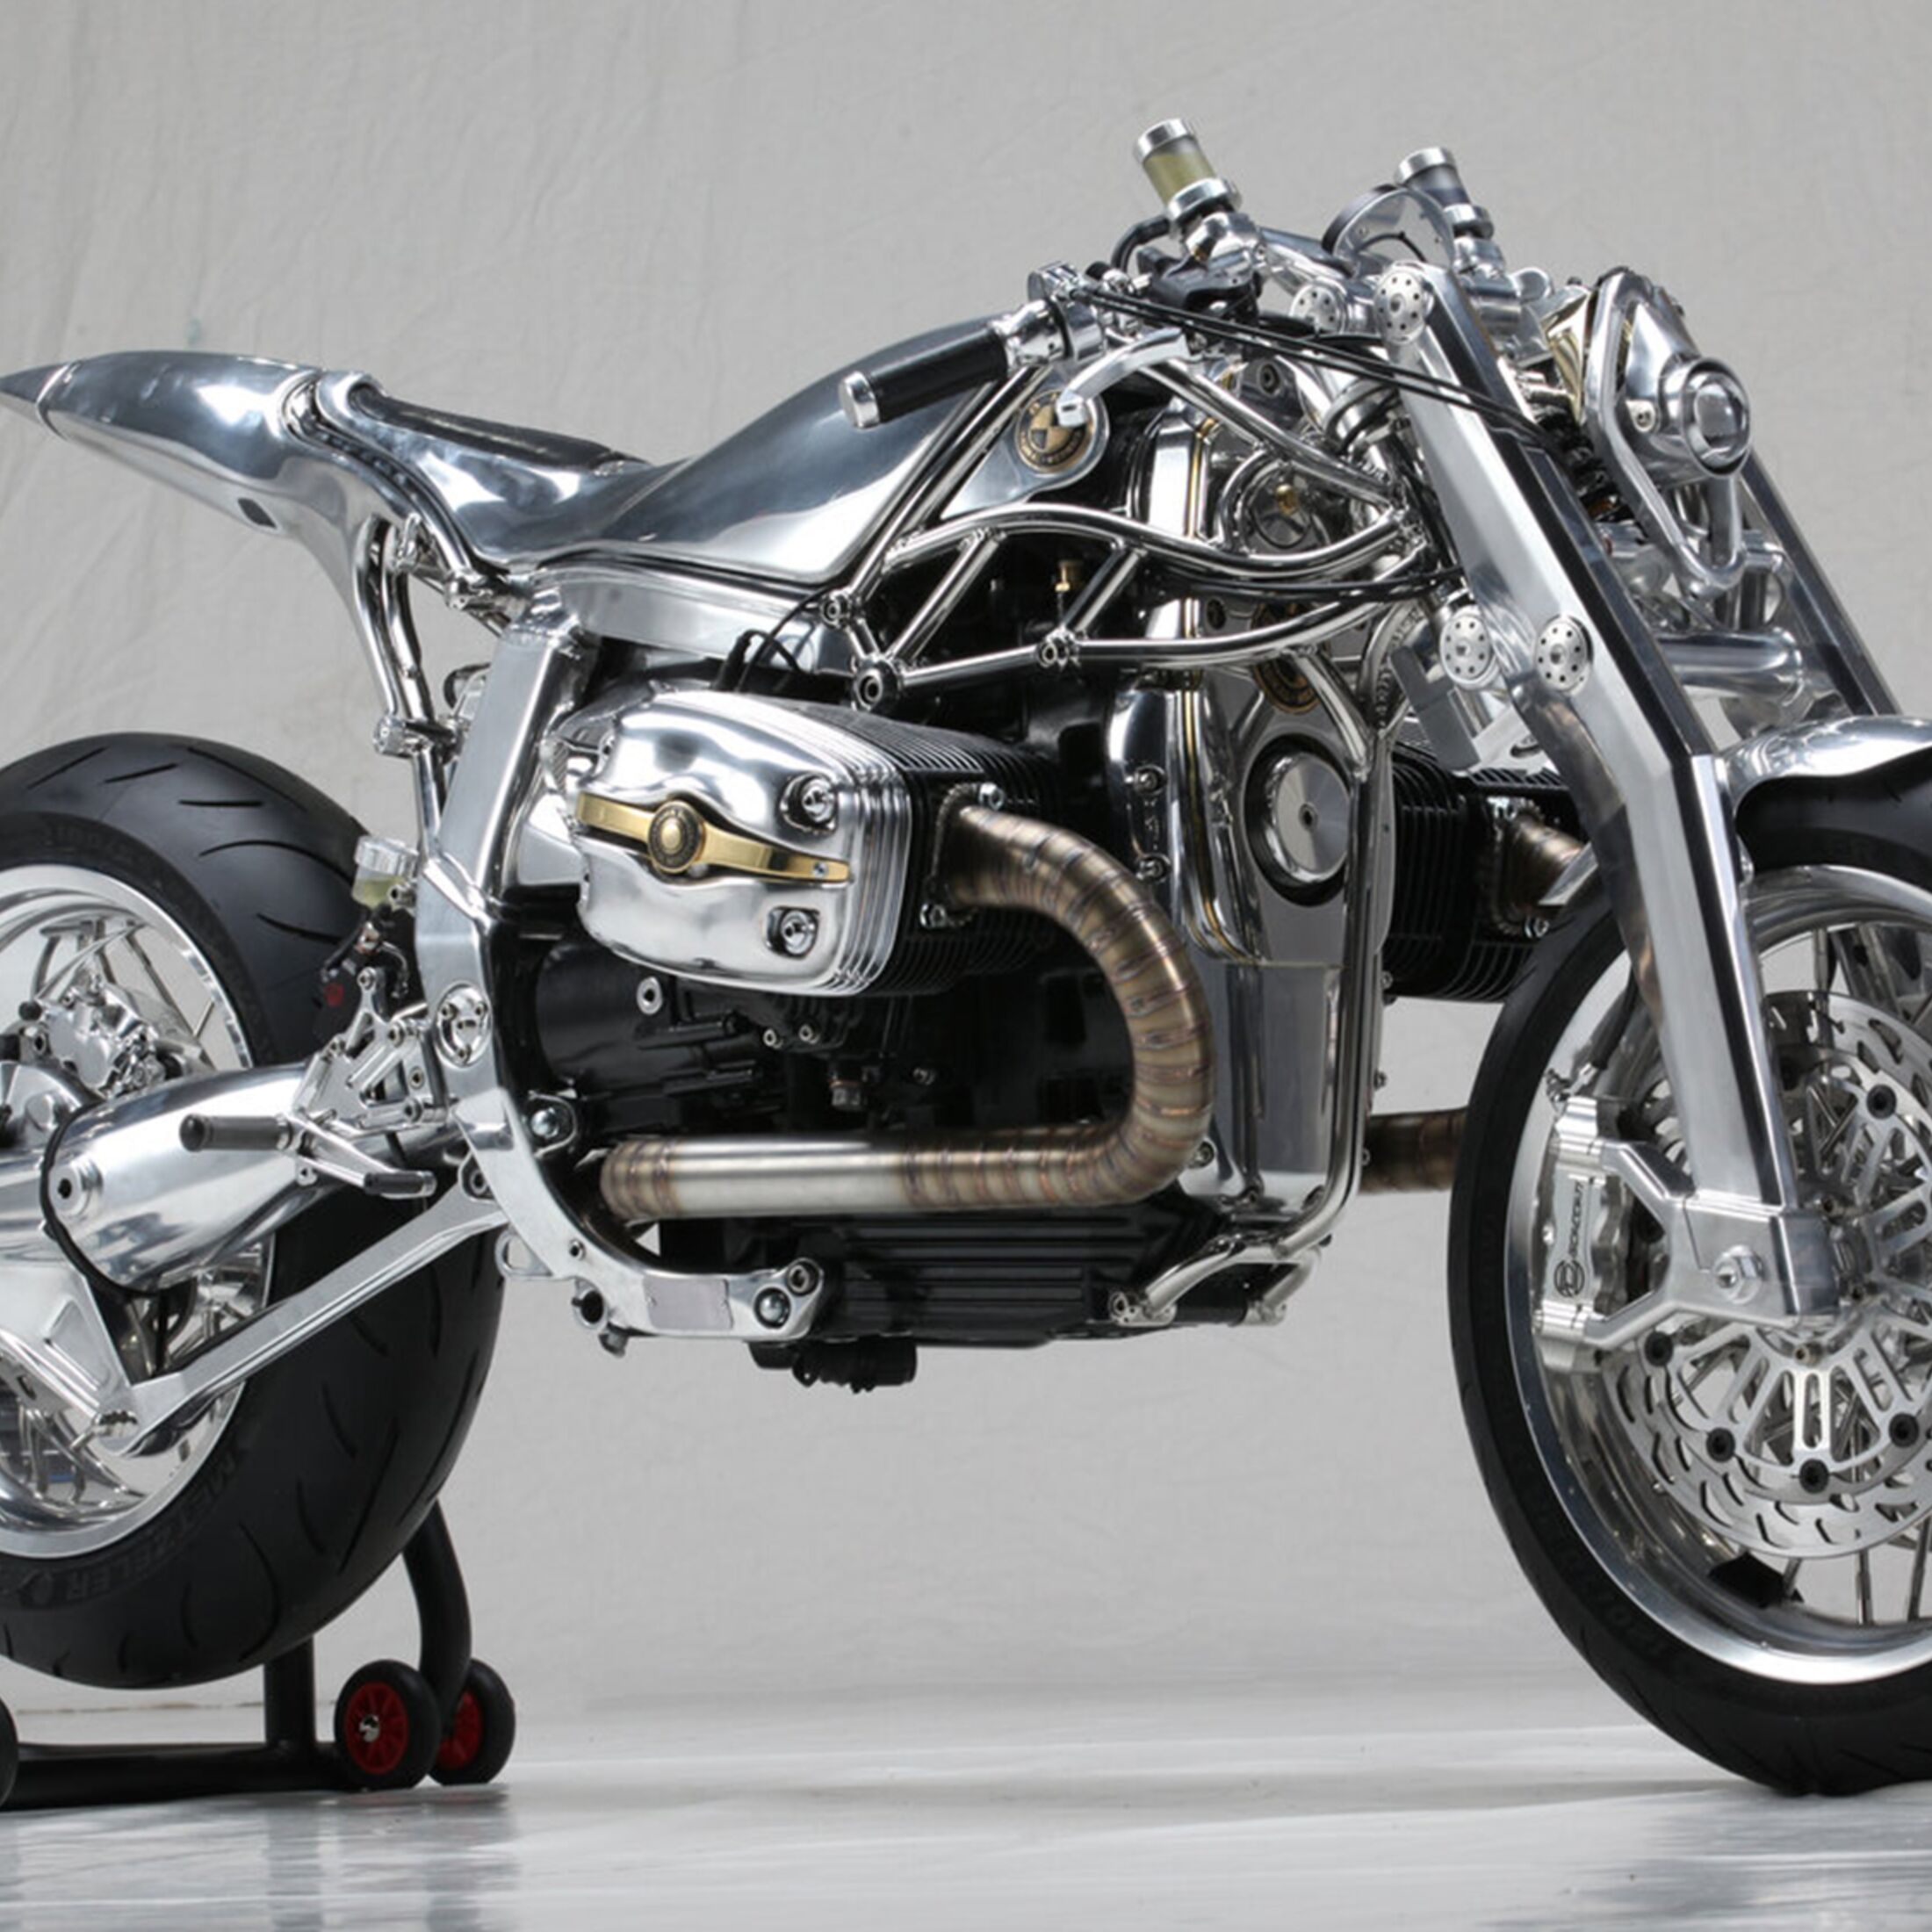 Motorrad-Modell - 1001Hobbies, der Spezialist für Motorrad-Modelle